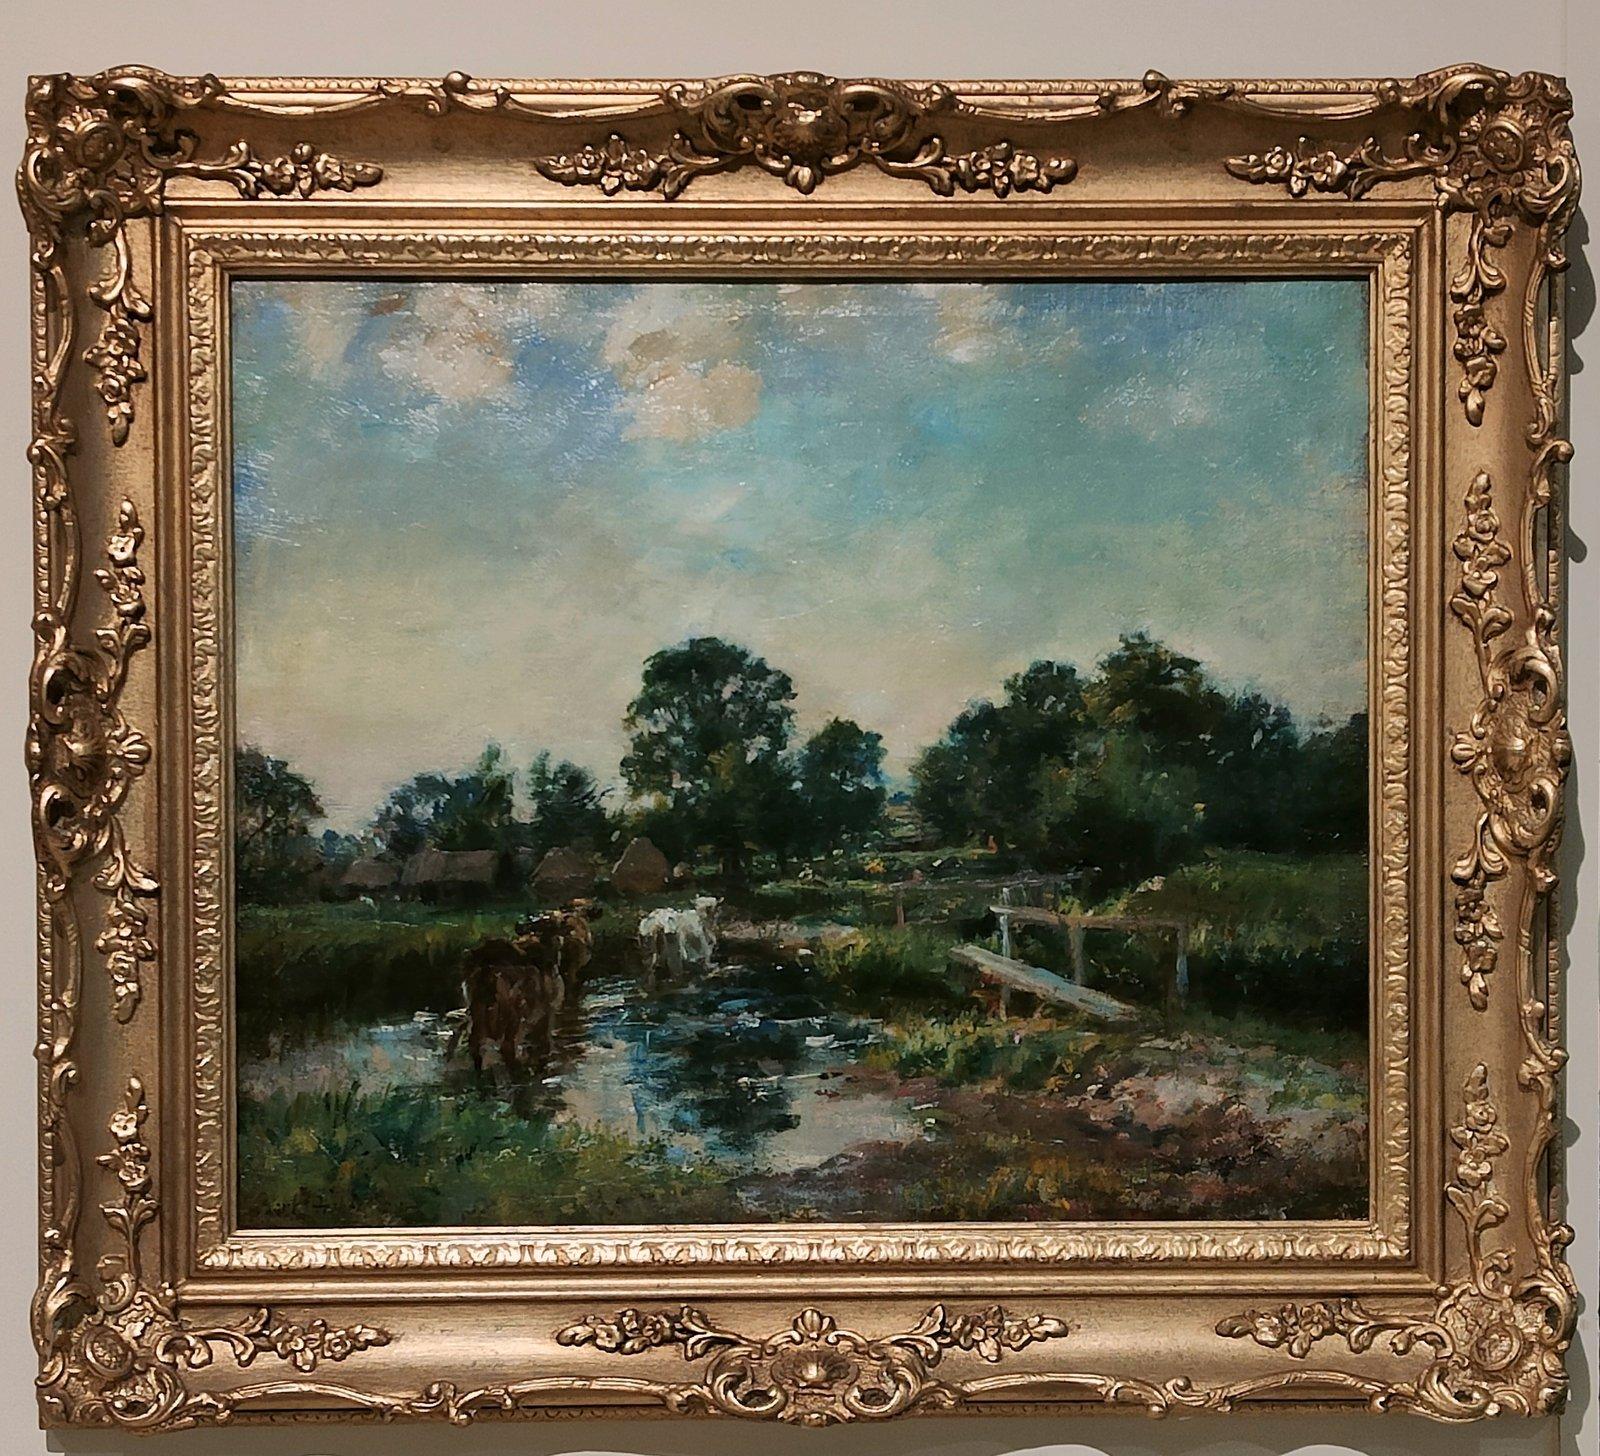 Peinture à l'huile de William Mark Fisher "Bétail près d'un ruisseau" 1841 -1923 Né à Boston aux États-Unis, il étudie sous la direction de George Innes. Il voyage à Paris puis à Londres en 1872 où il devient membre de la Royal Academy. Huile sur